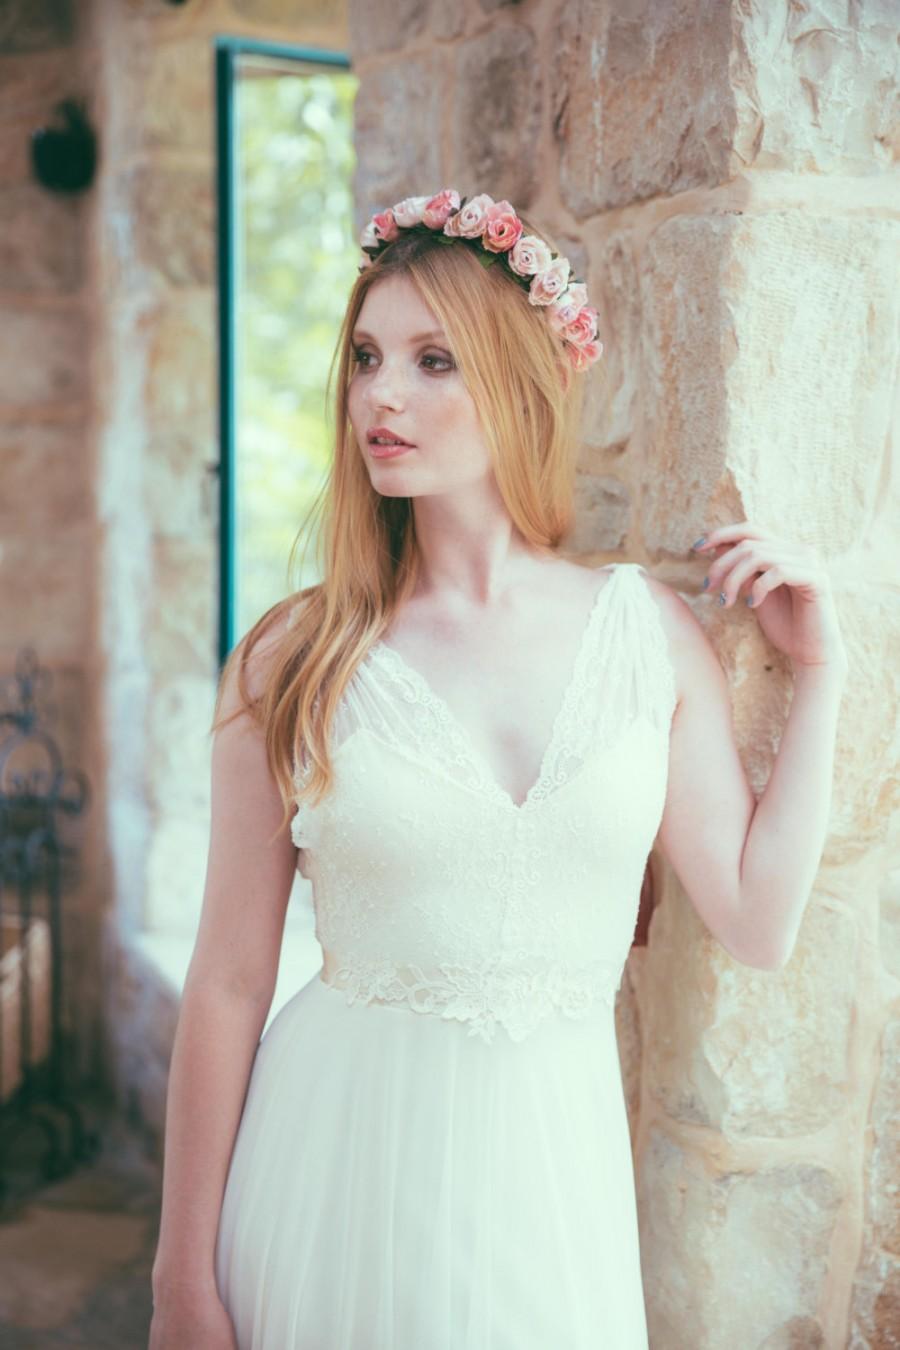 زفاف - Sophia - Romantic wedding dress with lace top and chiffon skirt, boho wedding dress, backless  wedding dress, beach wedding dress